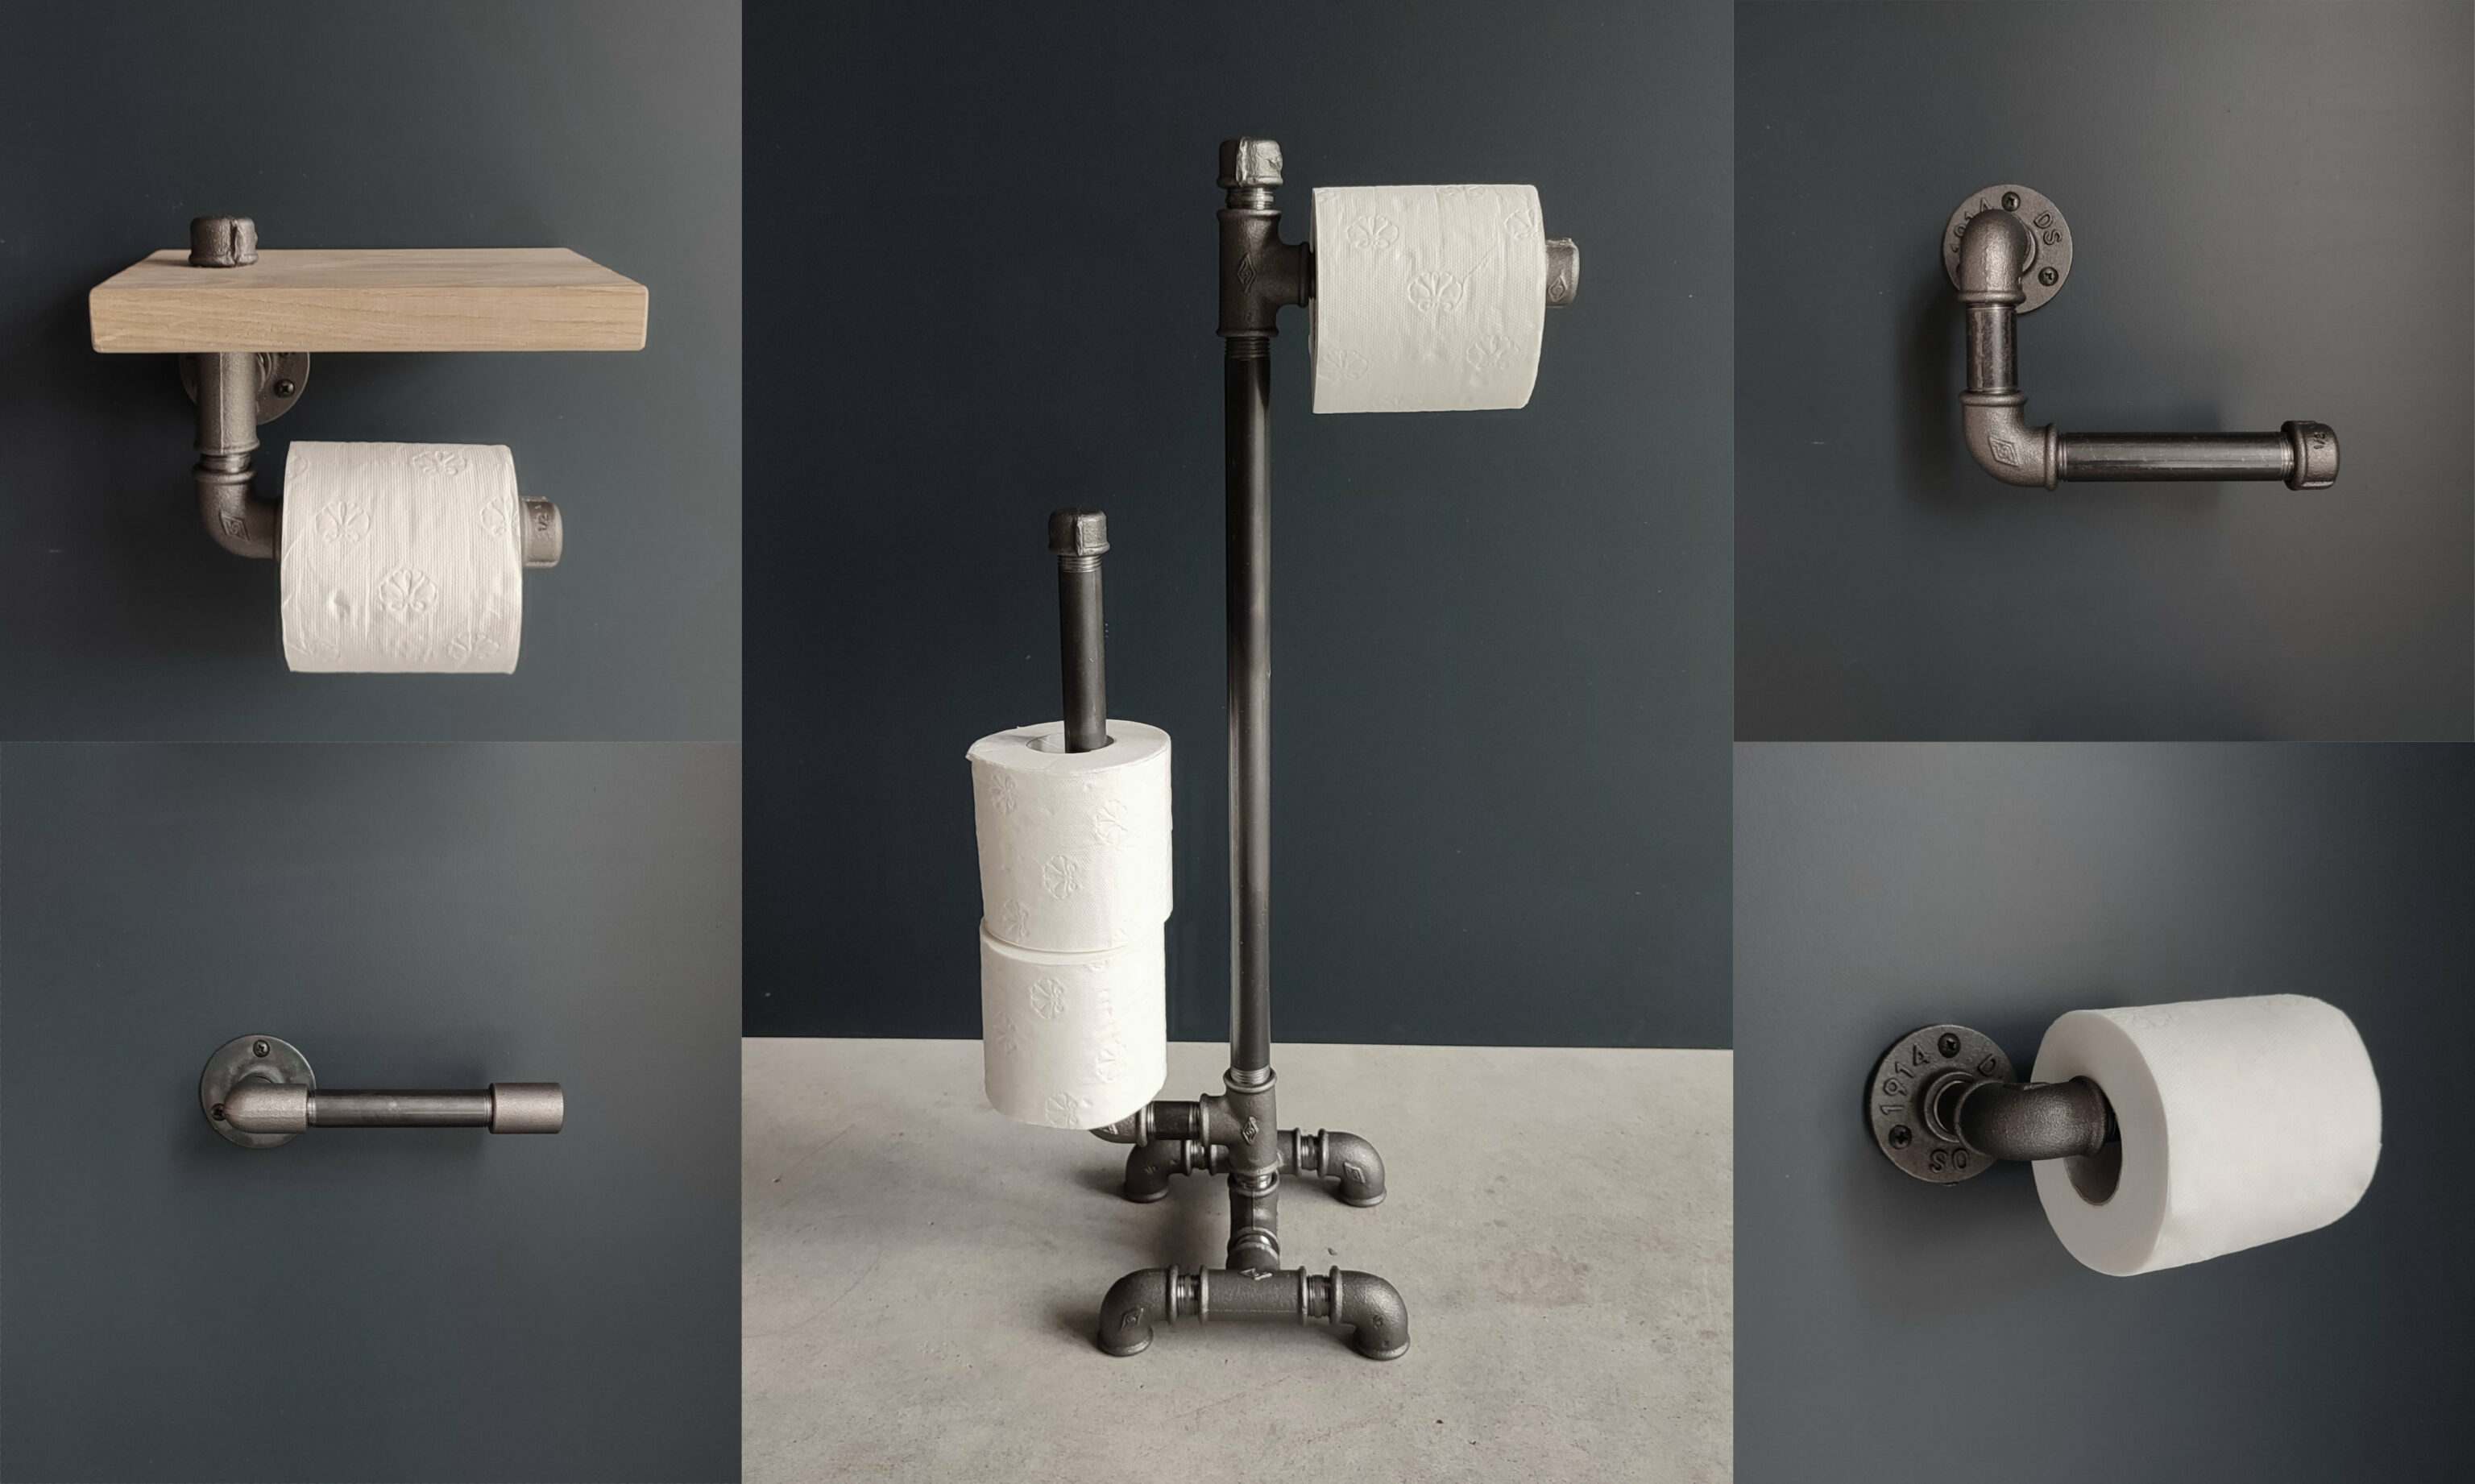 5 modèles de porte papier toilette à fabriquer de style industriel pour votre petit coin en déco plomberie - Blog déco - MC Fact